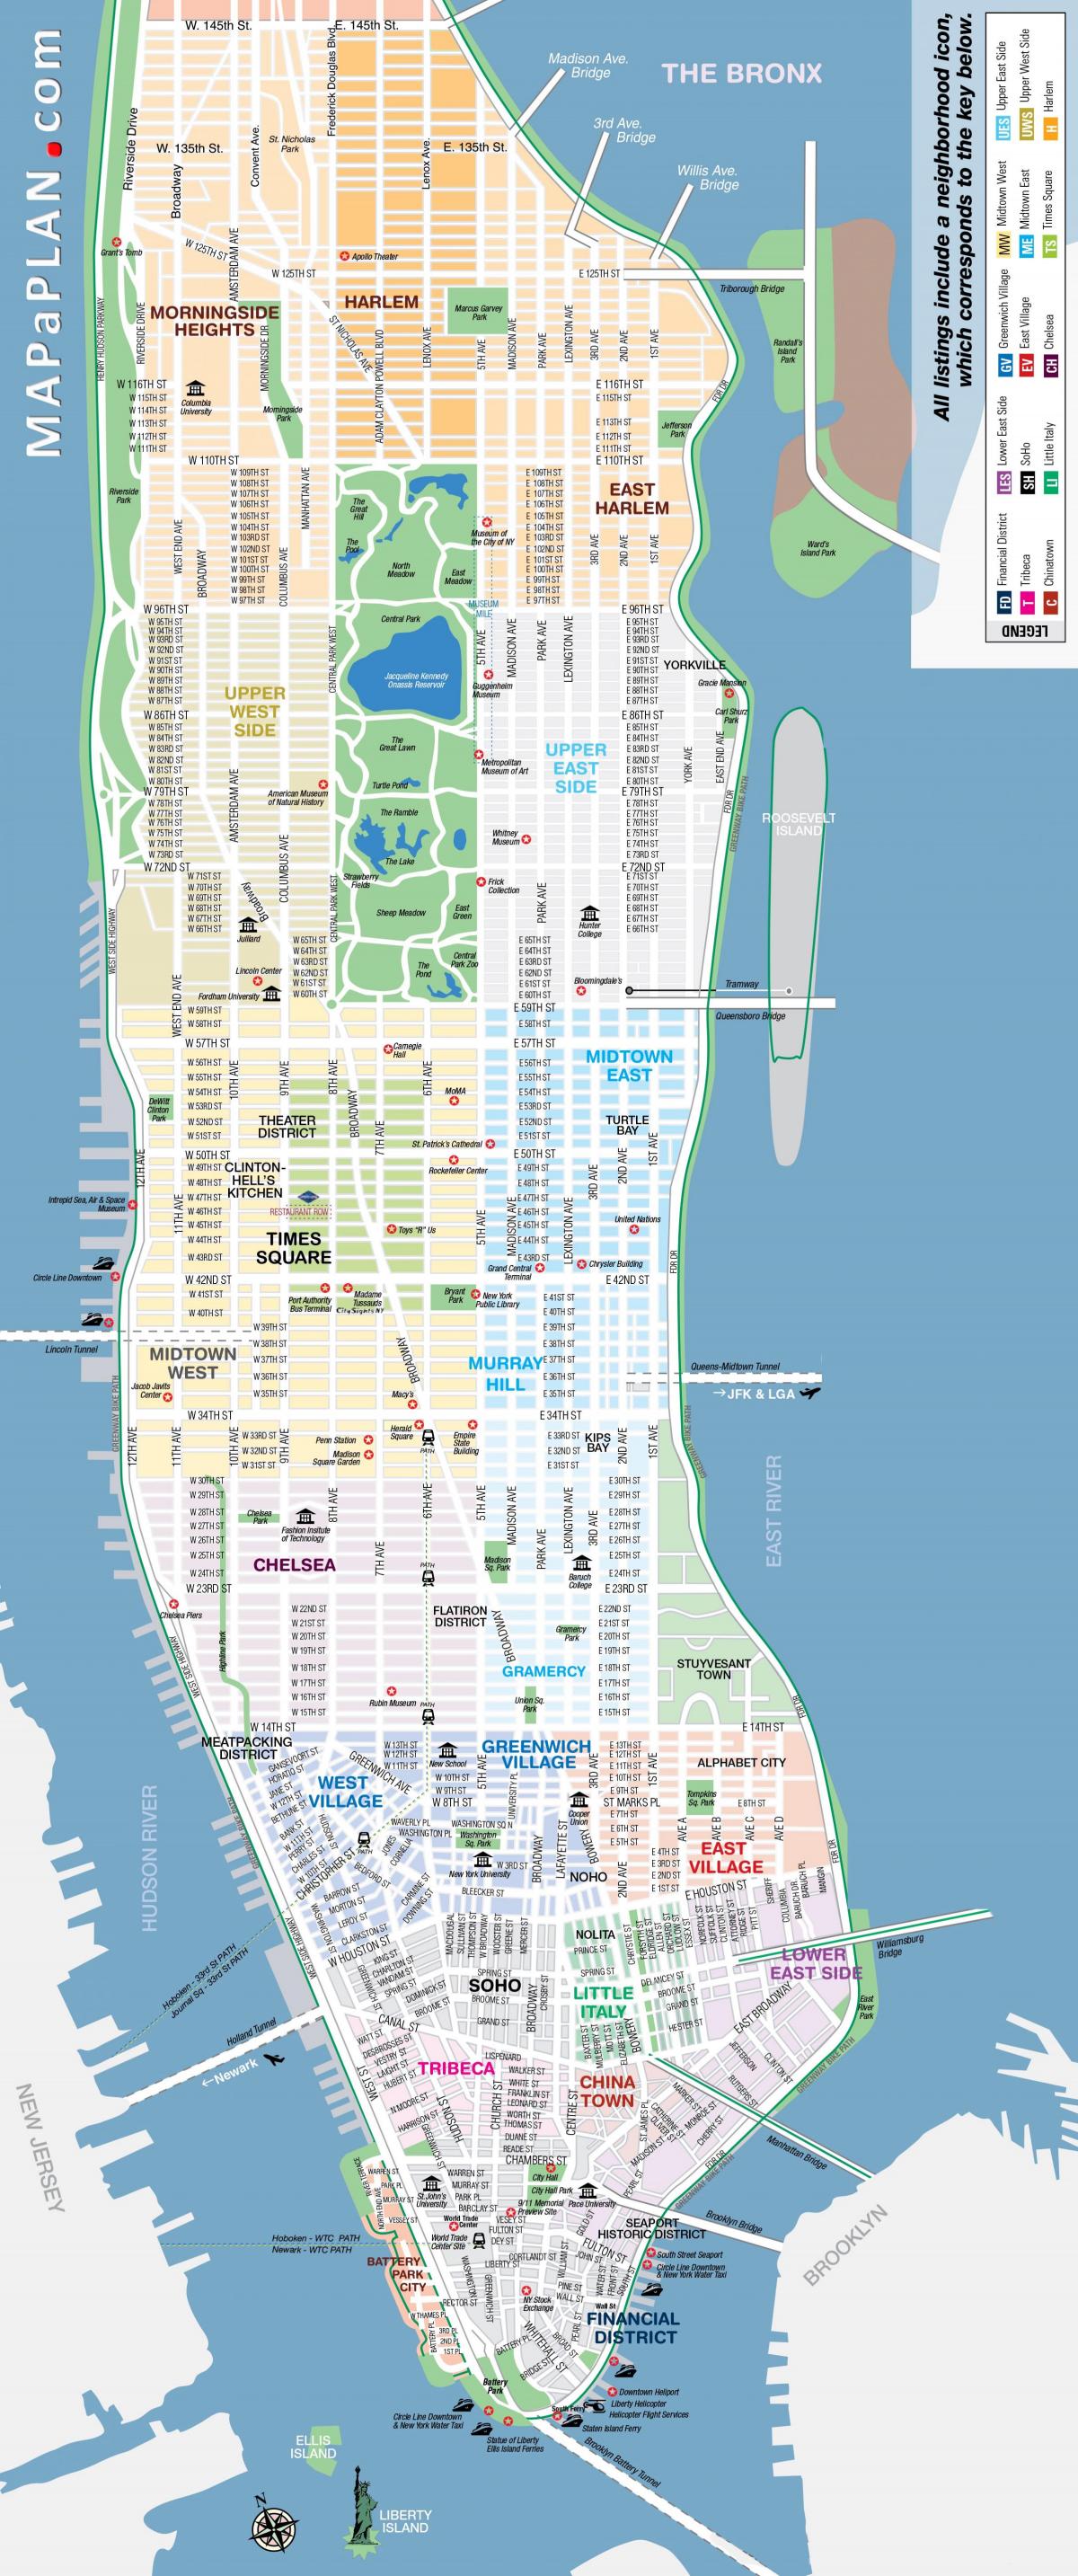 frjáls rekinn earth kort af Manhattan, new york.